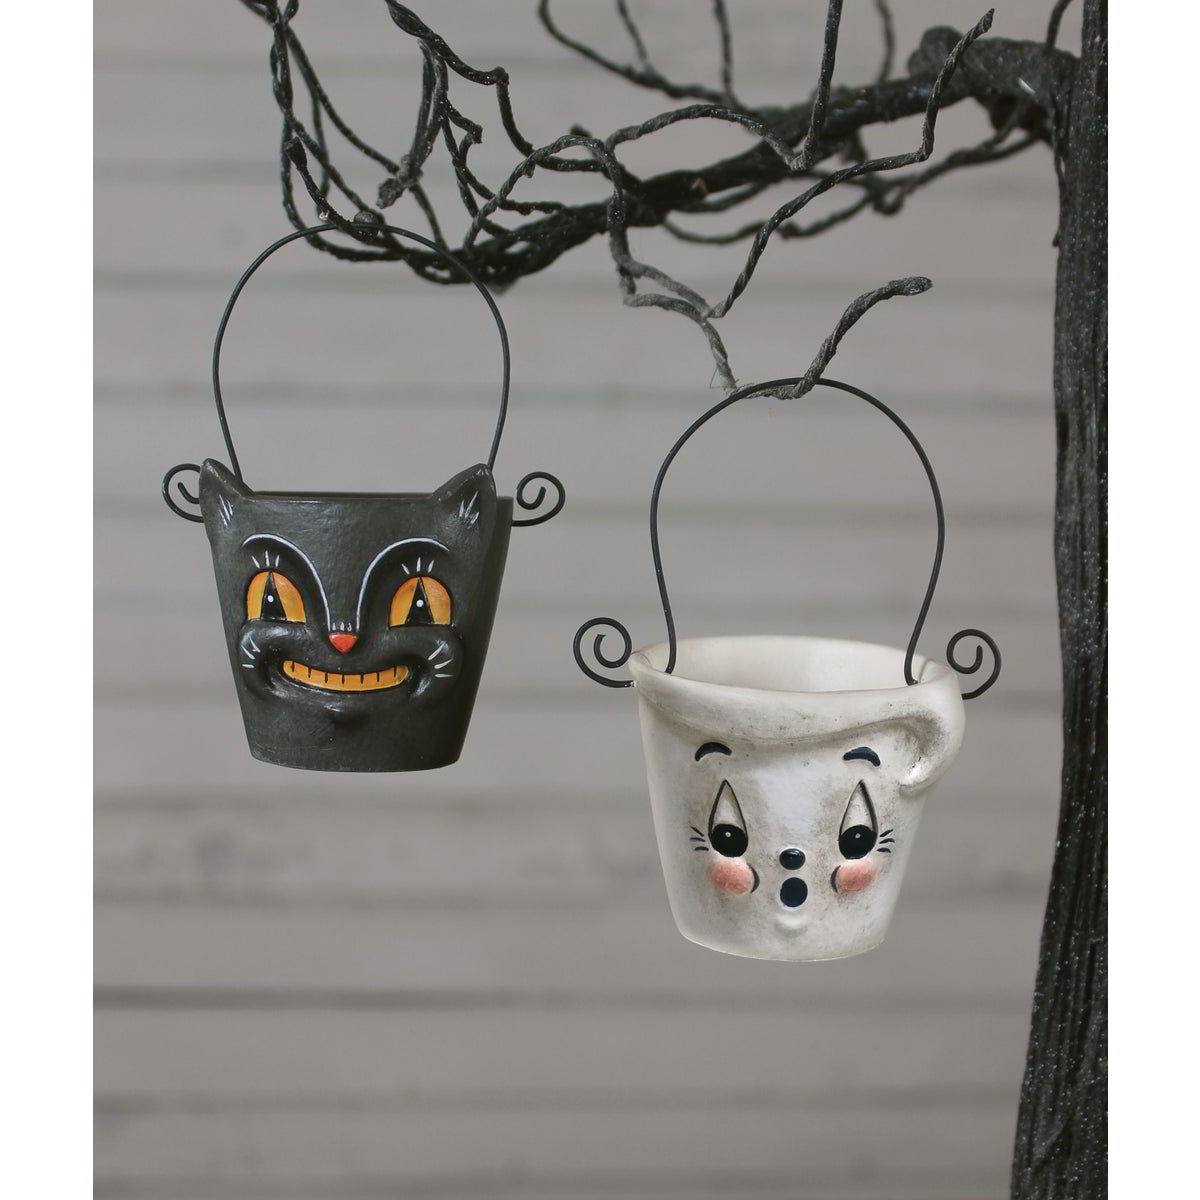 Boo & Cat Teeny Halloweenie Pail Ornaments Set/2